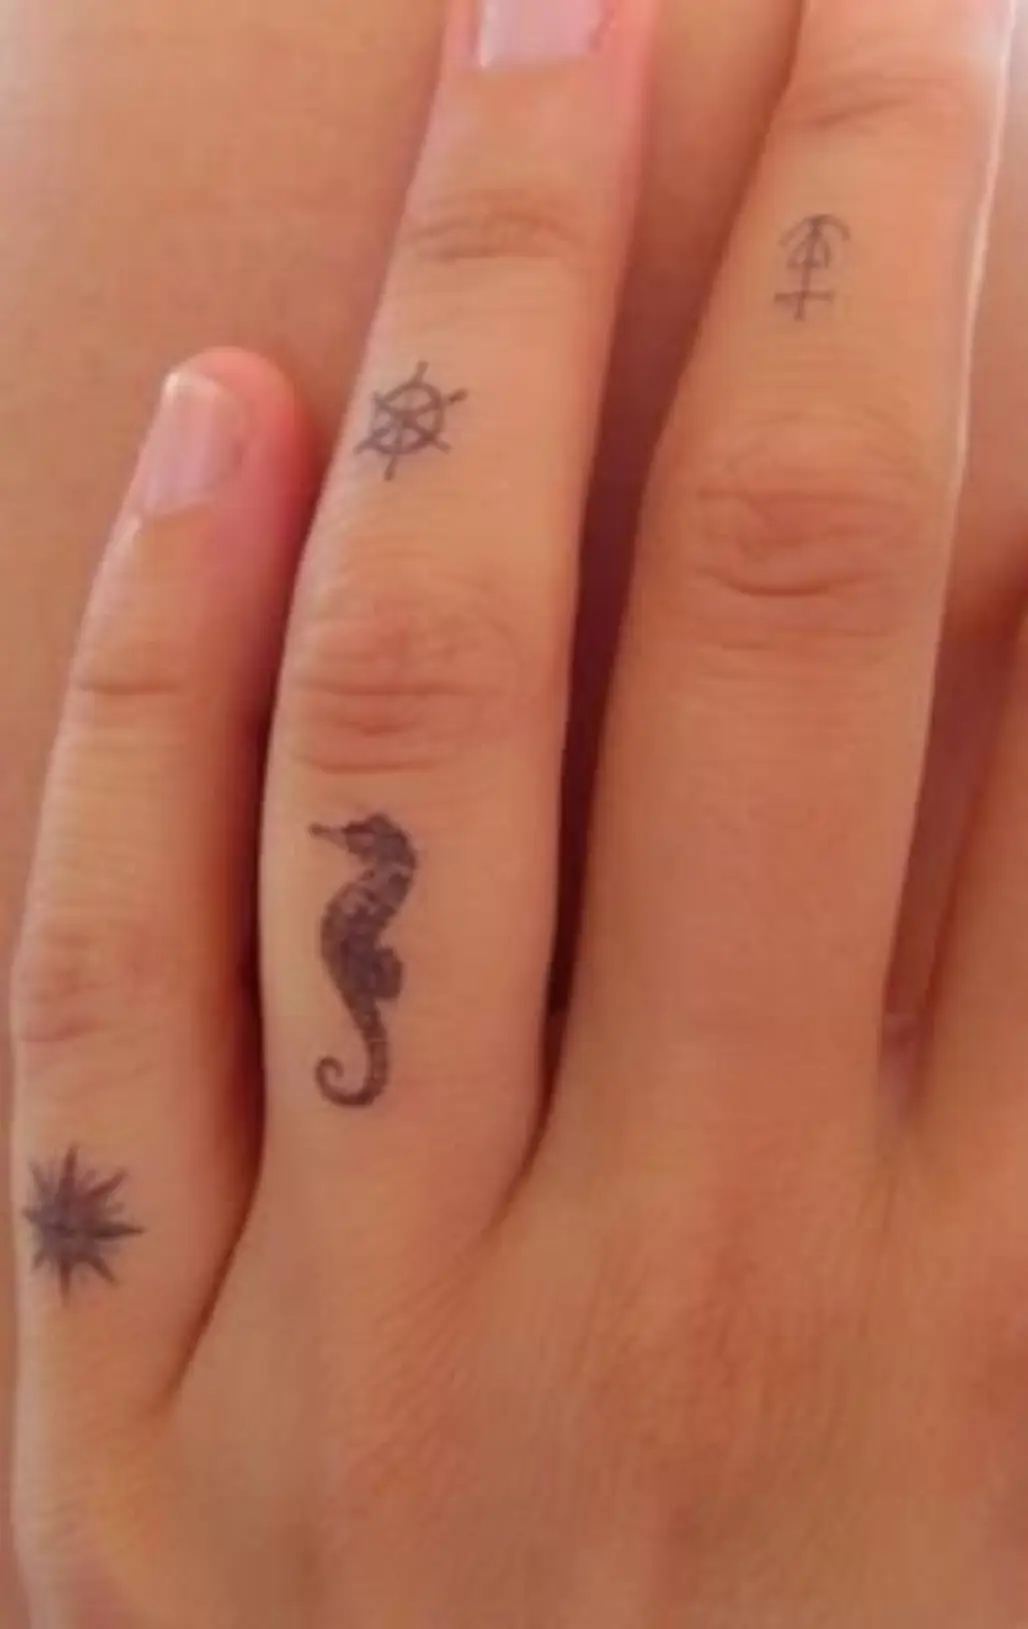 Fuck Yeah, Stick n' Poke! — Finger tattoos!